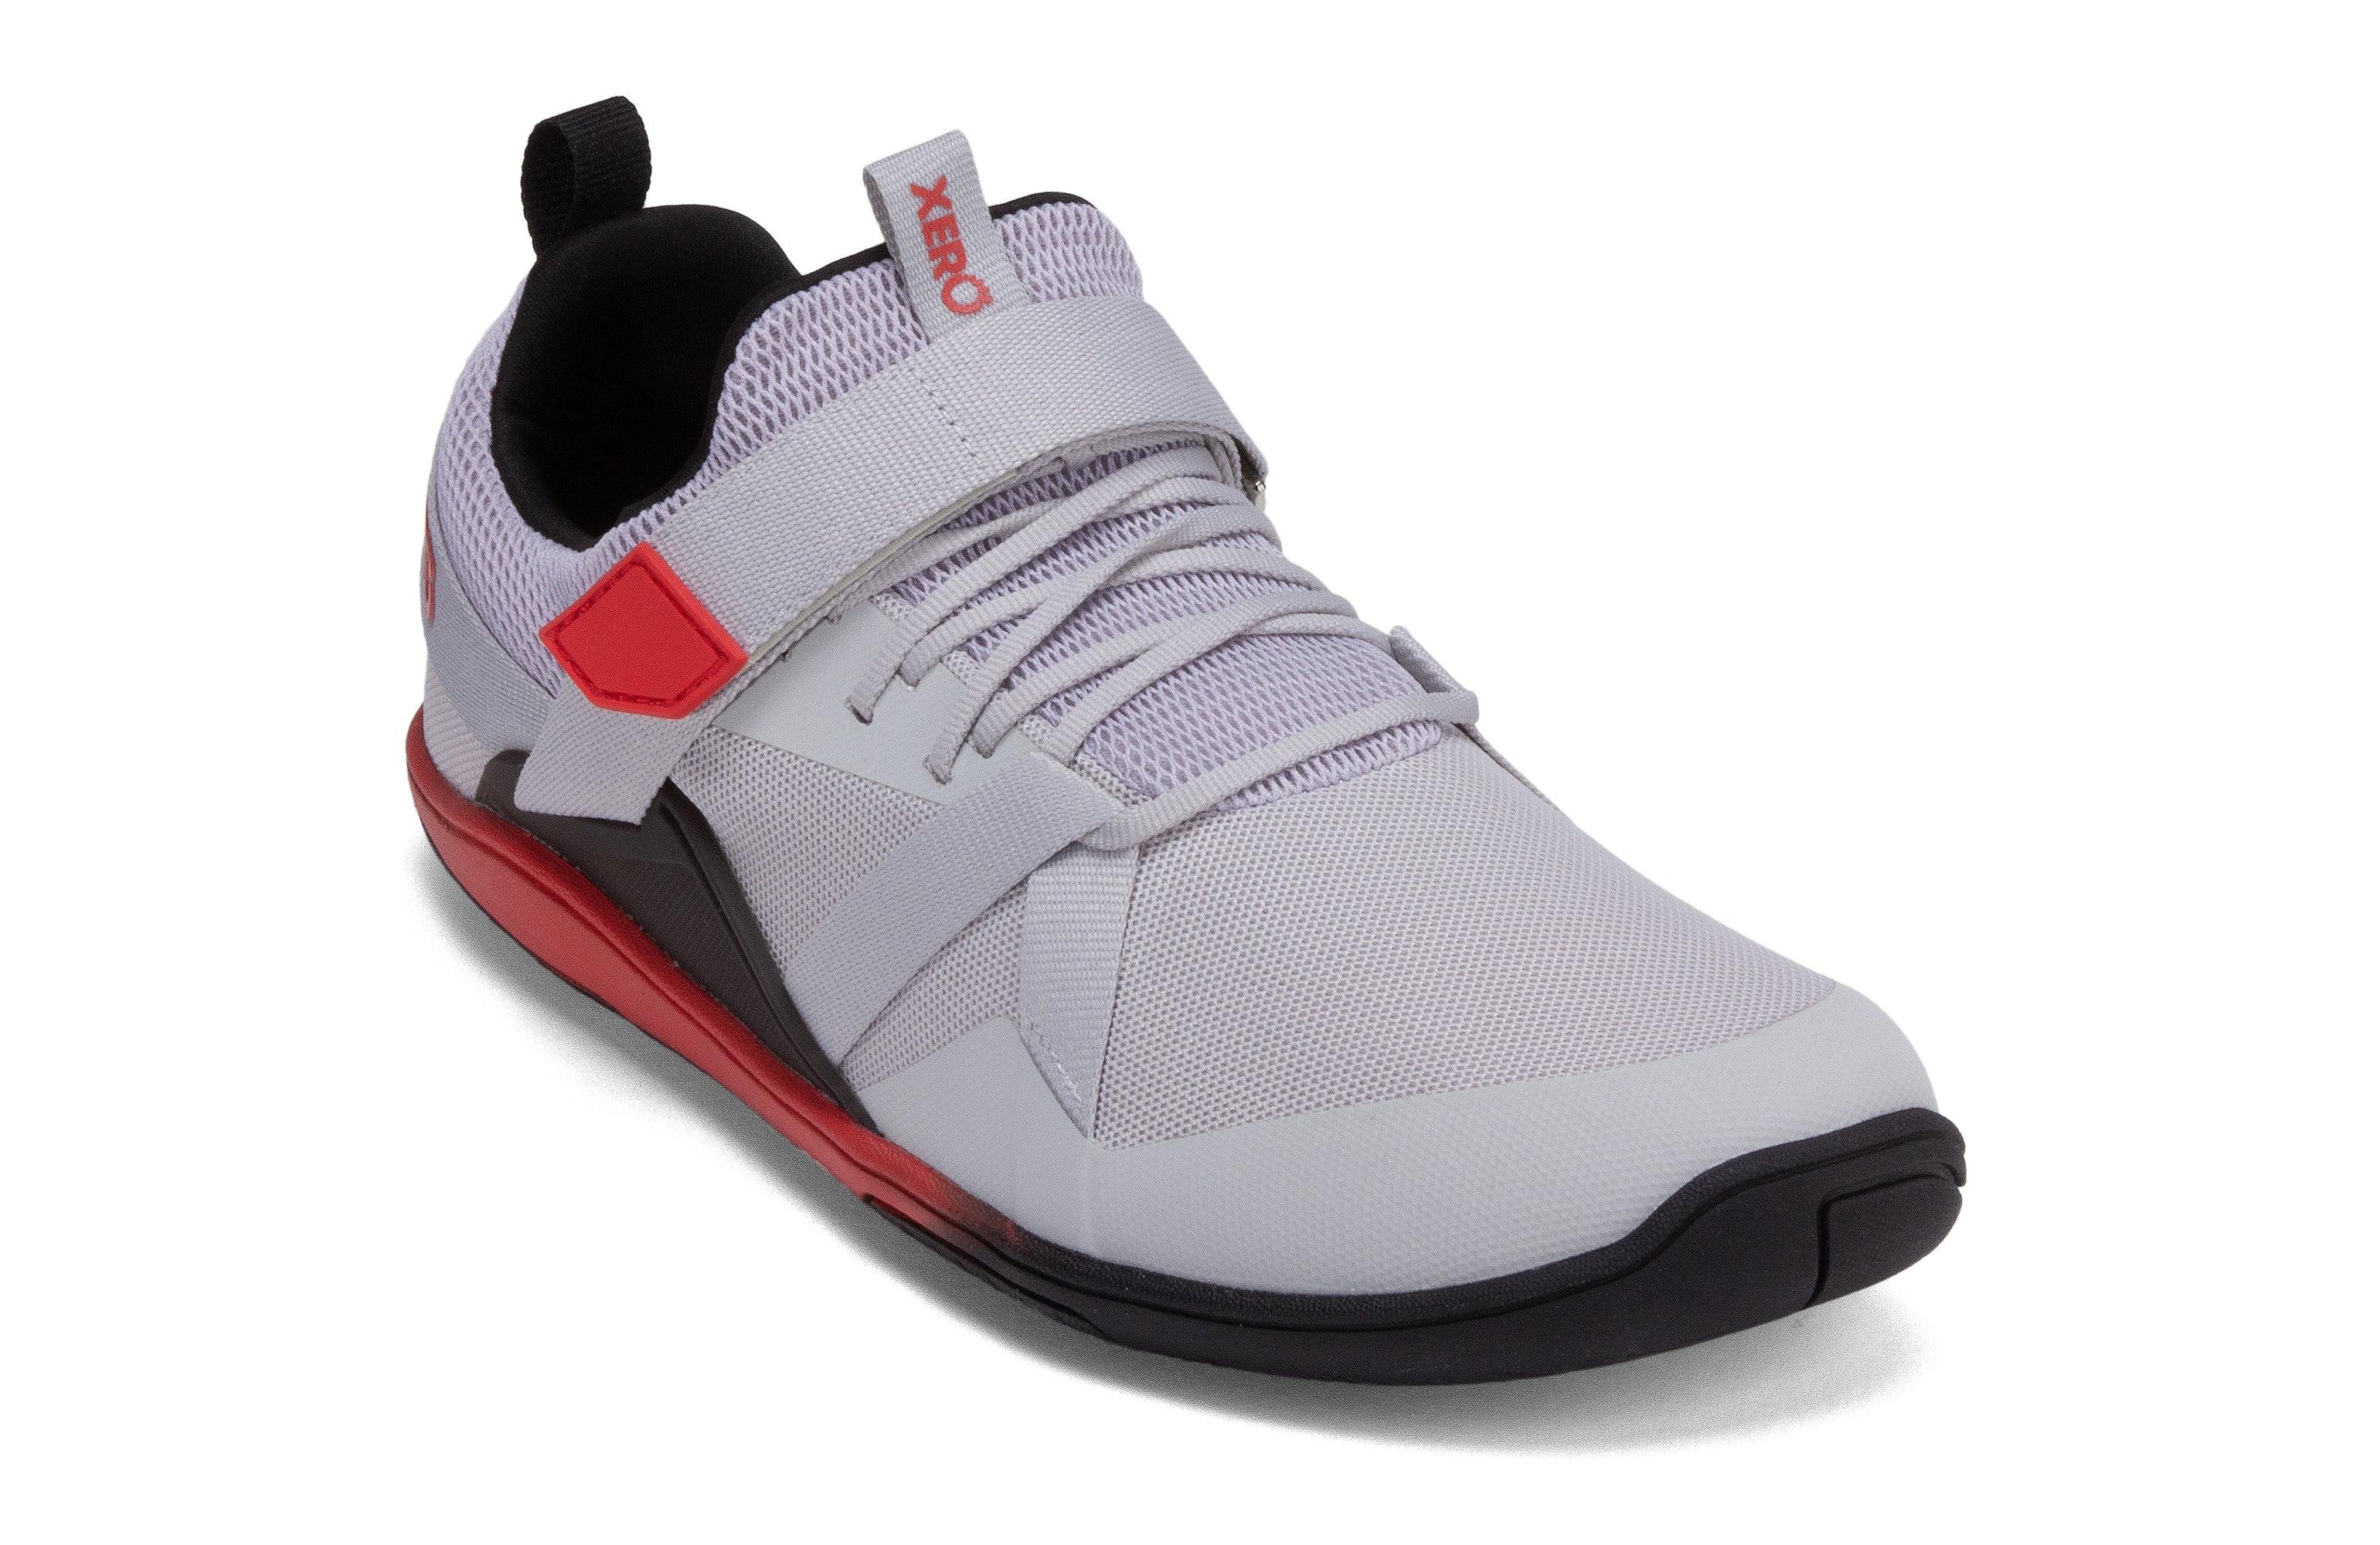 Xero Shoes Forza Trainer Mens barfods træningssko til mænd i farven micro gray / red, vinklet